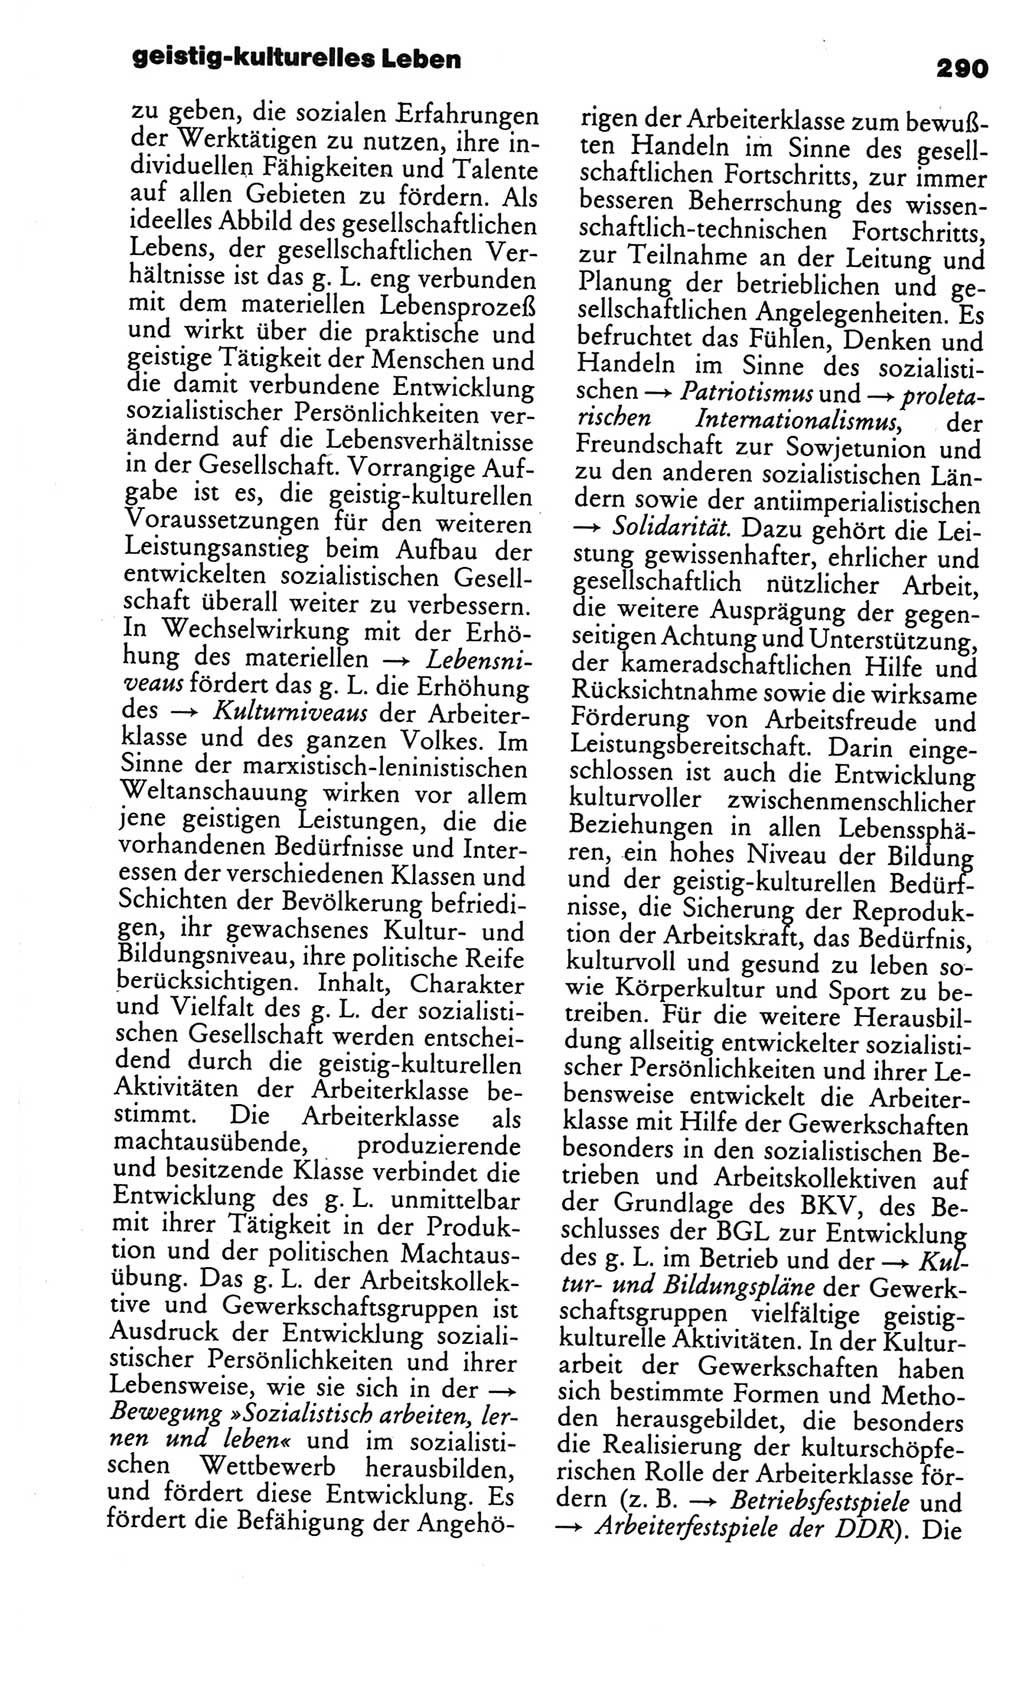 Kleines politisches Wörterbuch [Deutsche Demokratische Republik (DDR)] 1986, Seite 290 (Kl. pol. Wb. DDR 1986, S. 290)